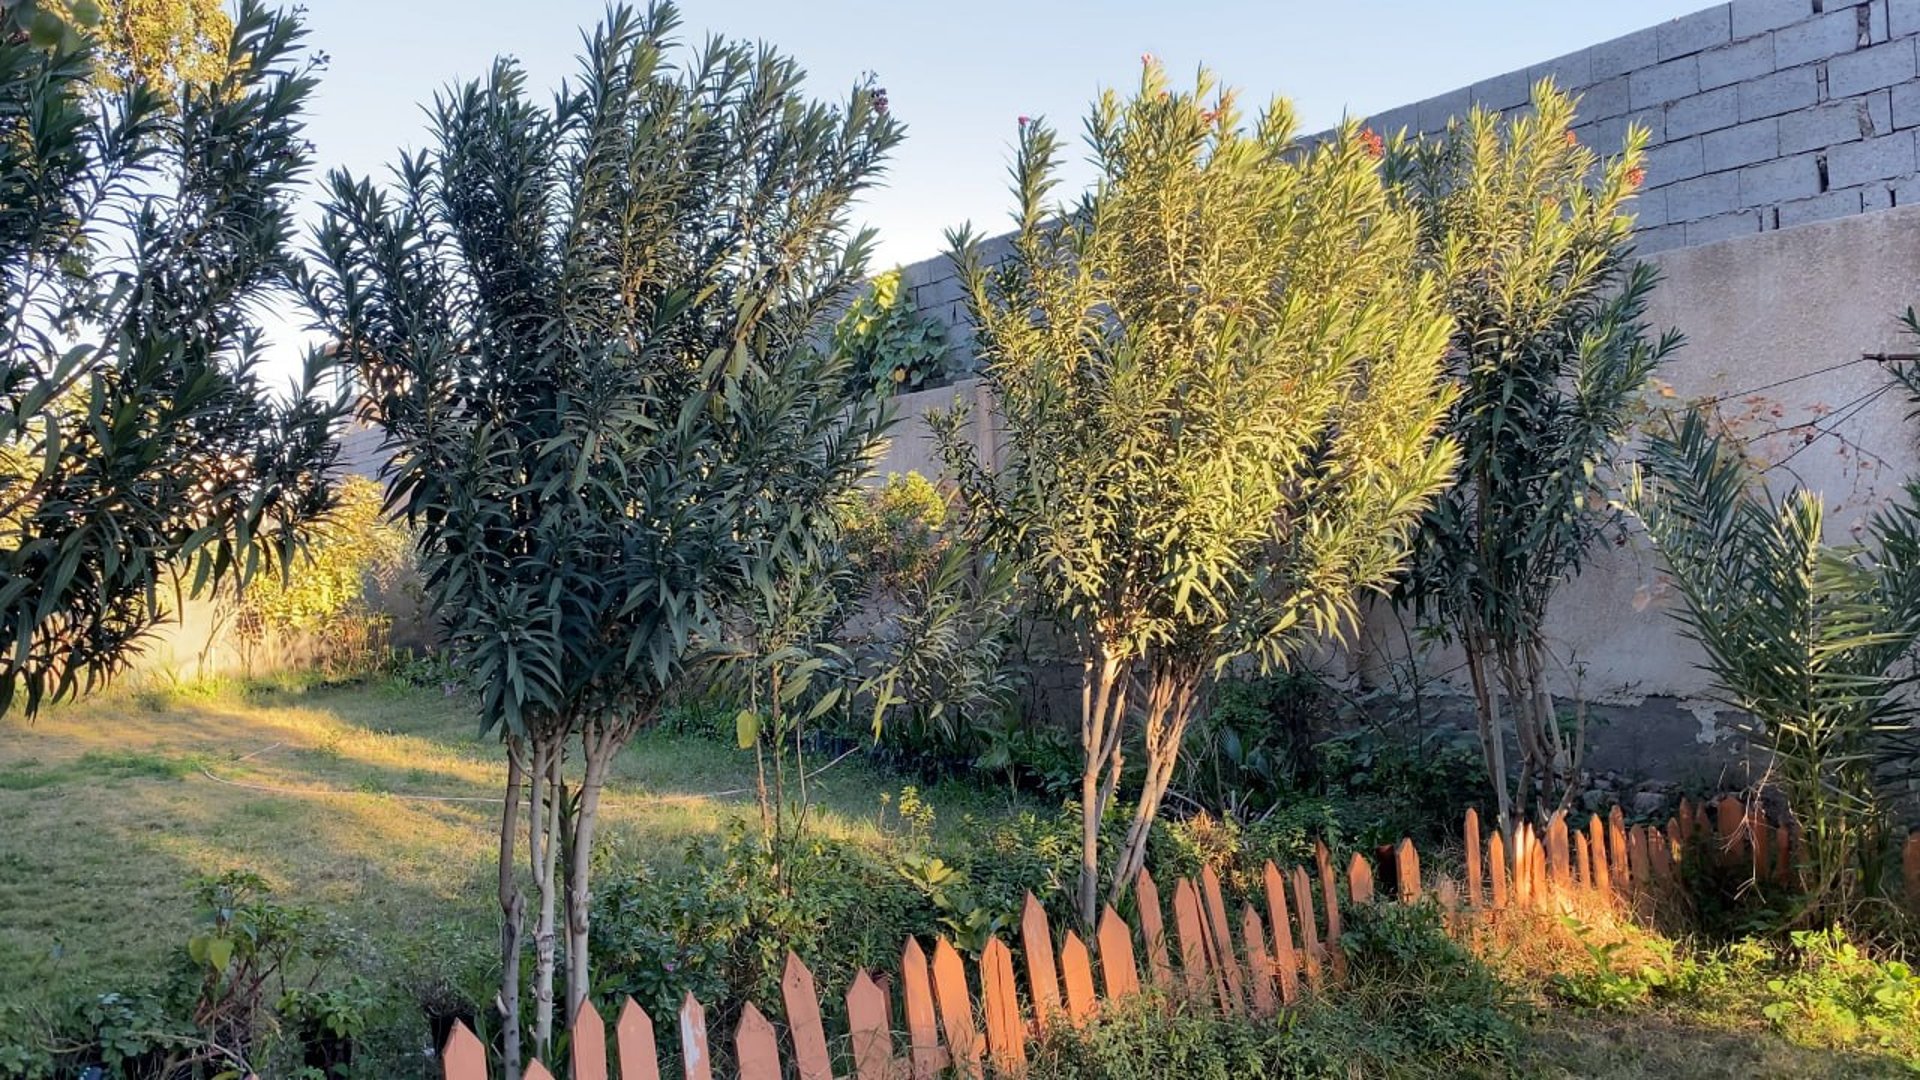 Abdul Hadi Abd transforms Najafs Forum garden into a green oasis